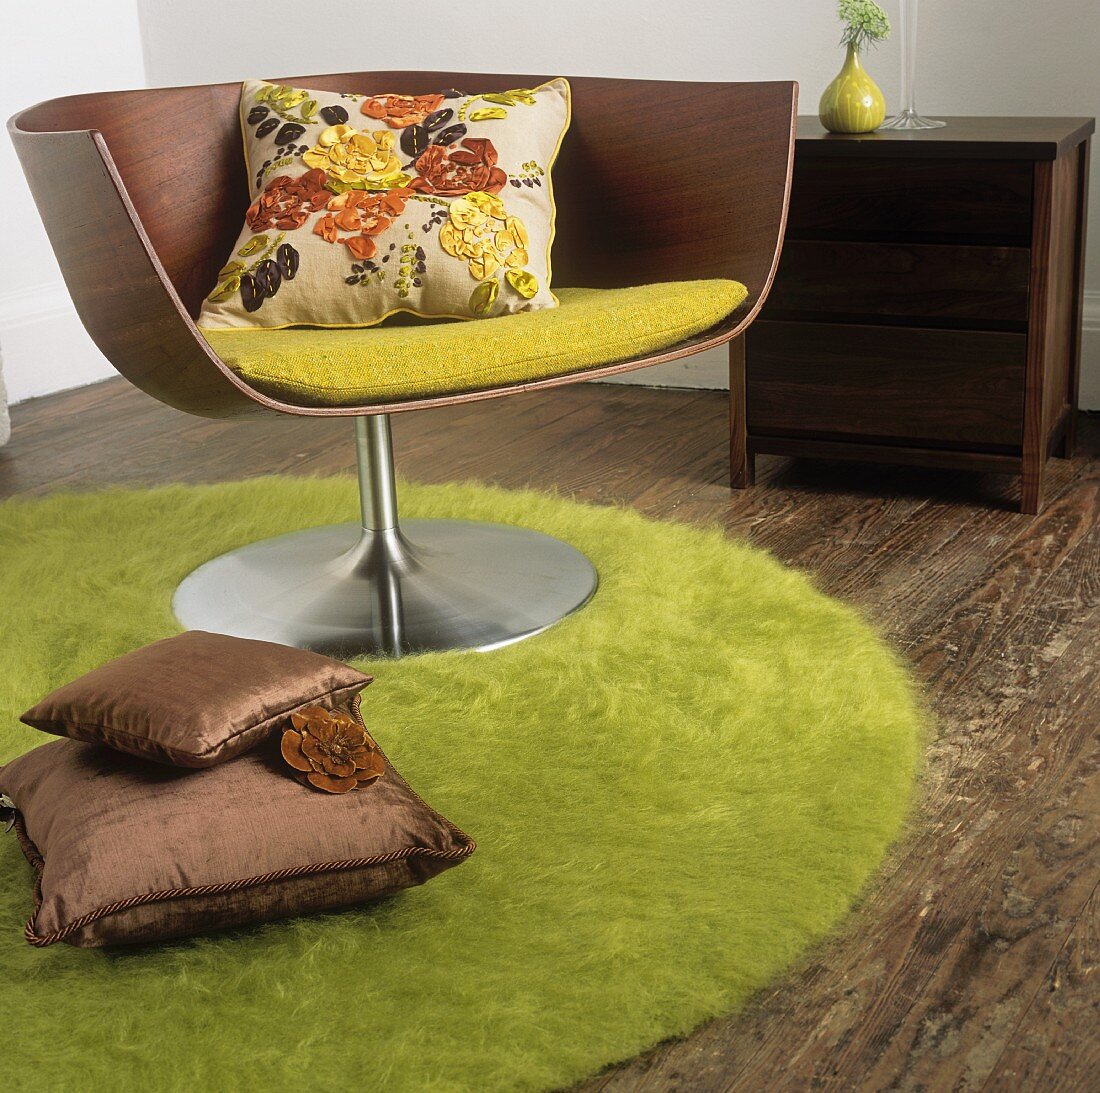 Holzdrehstuhl mit Kissen auf einem runden grünen Teppich